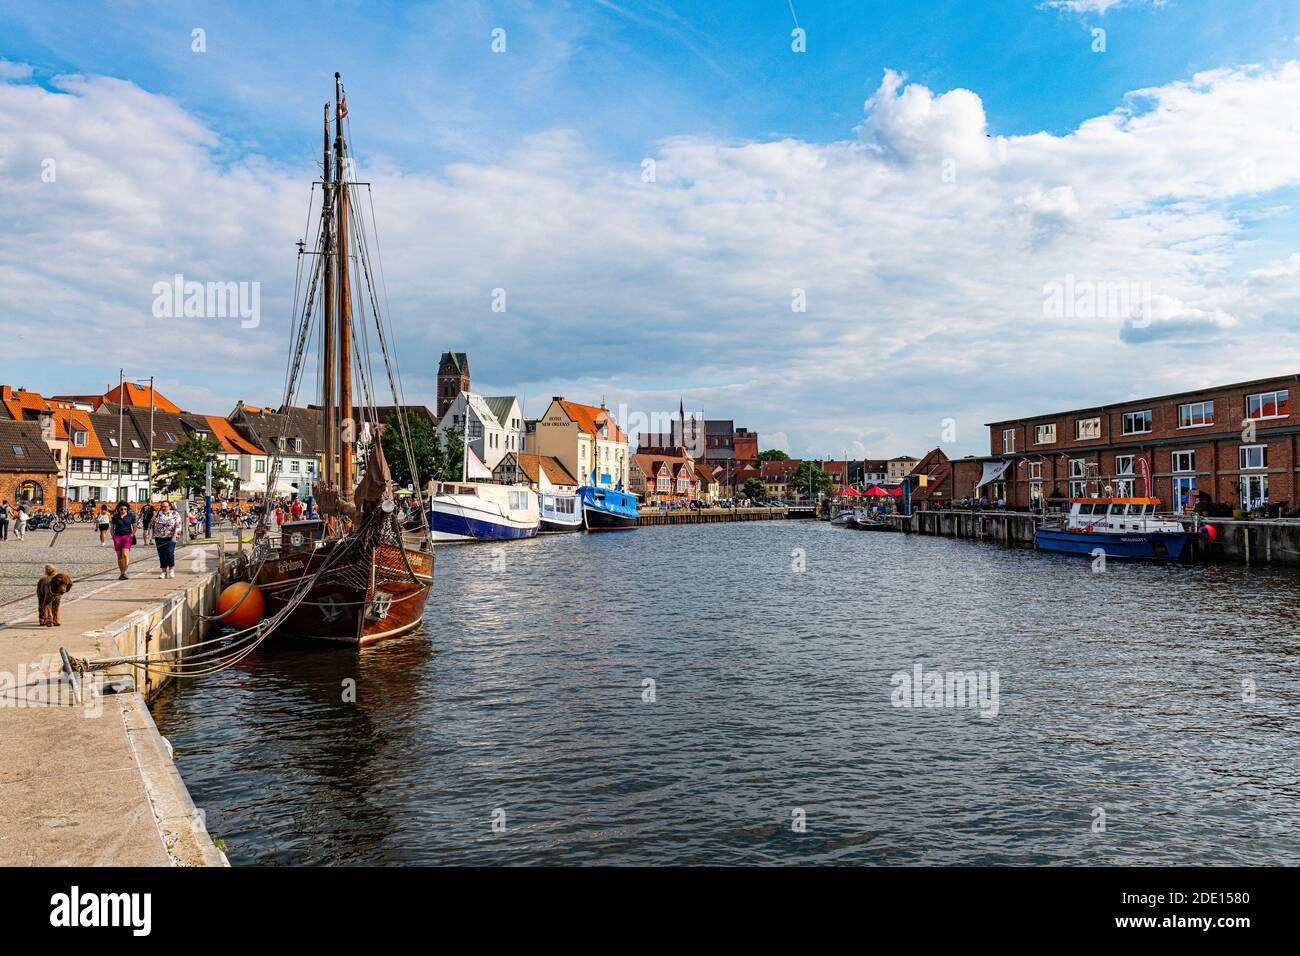 Hafen der Hansestadt Wismar, UNESCO Weltkulturerbe, Mecklenburg-Vorpommern, Deutschland, Europa Stockfoto